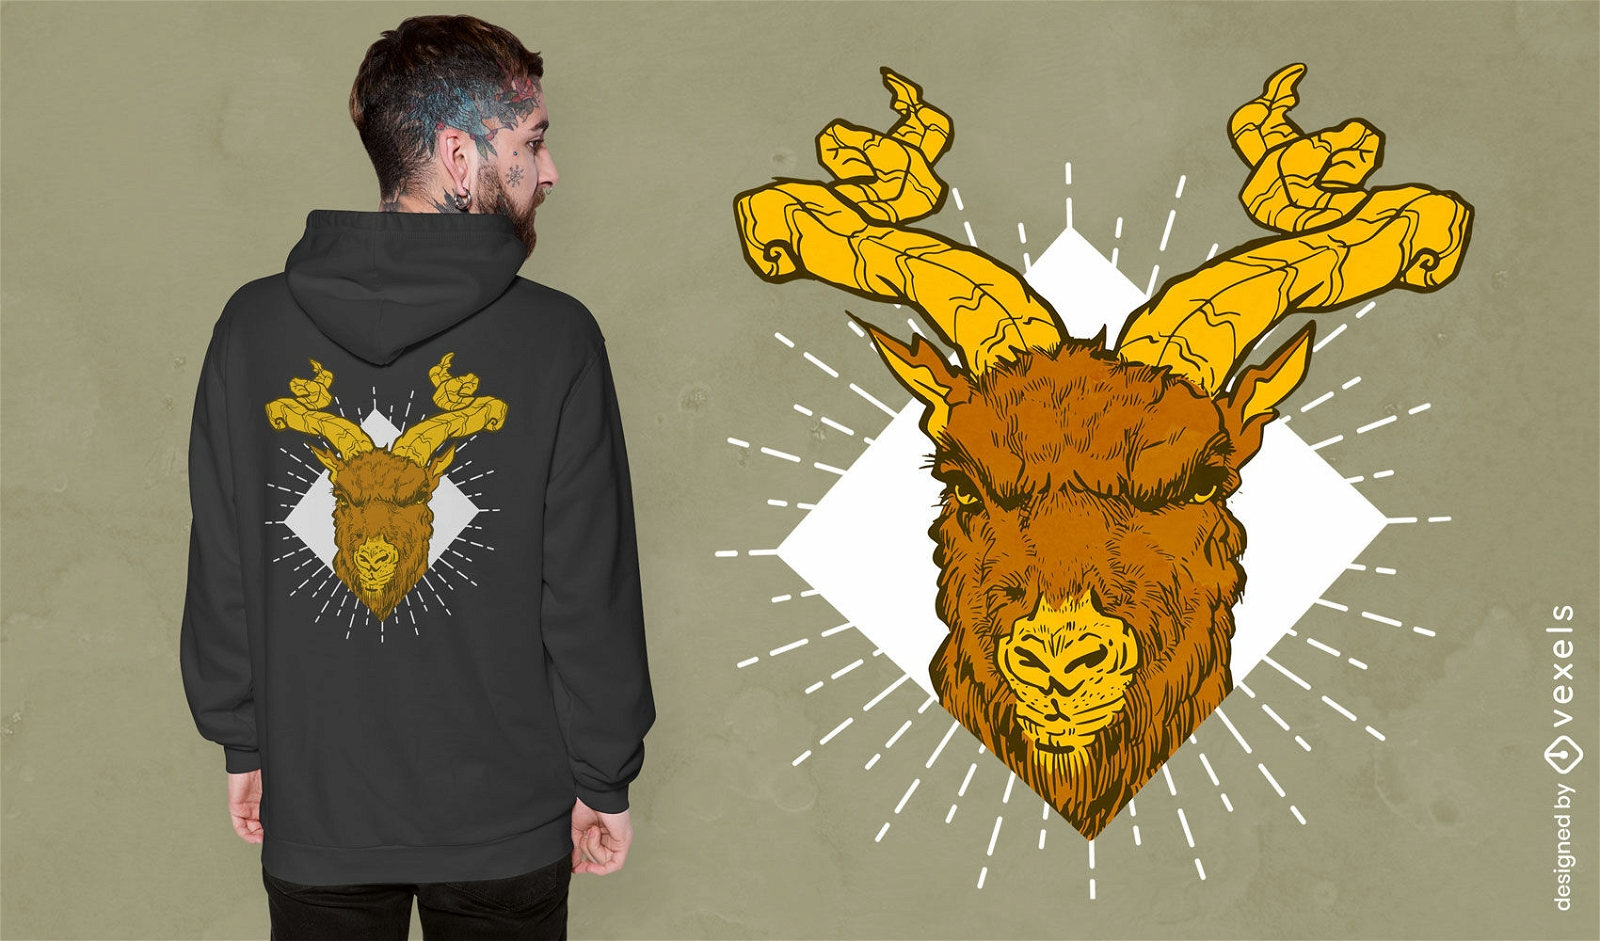 Wütendes Ziegen-Vieh-T-Shirt-Design